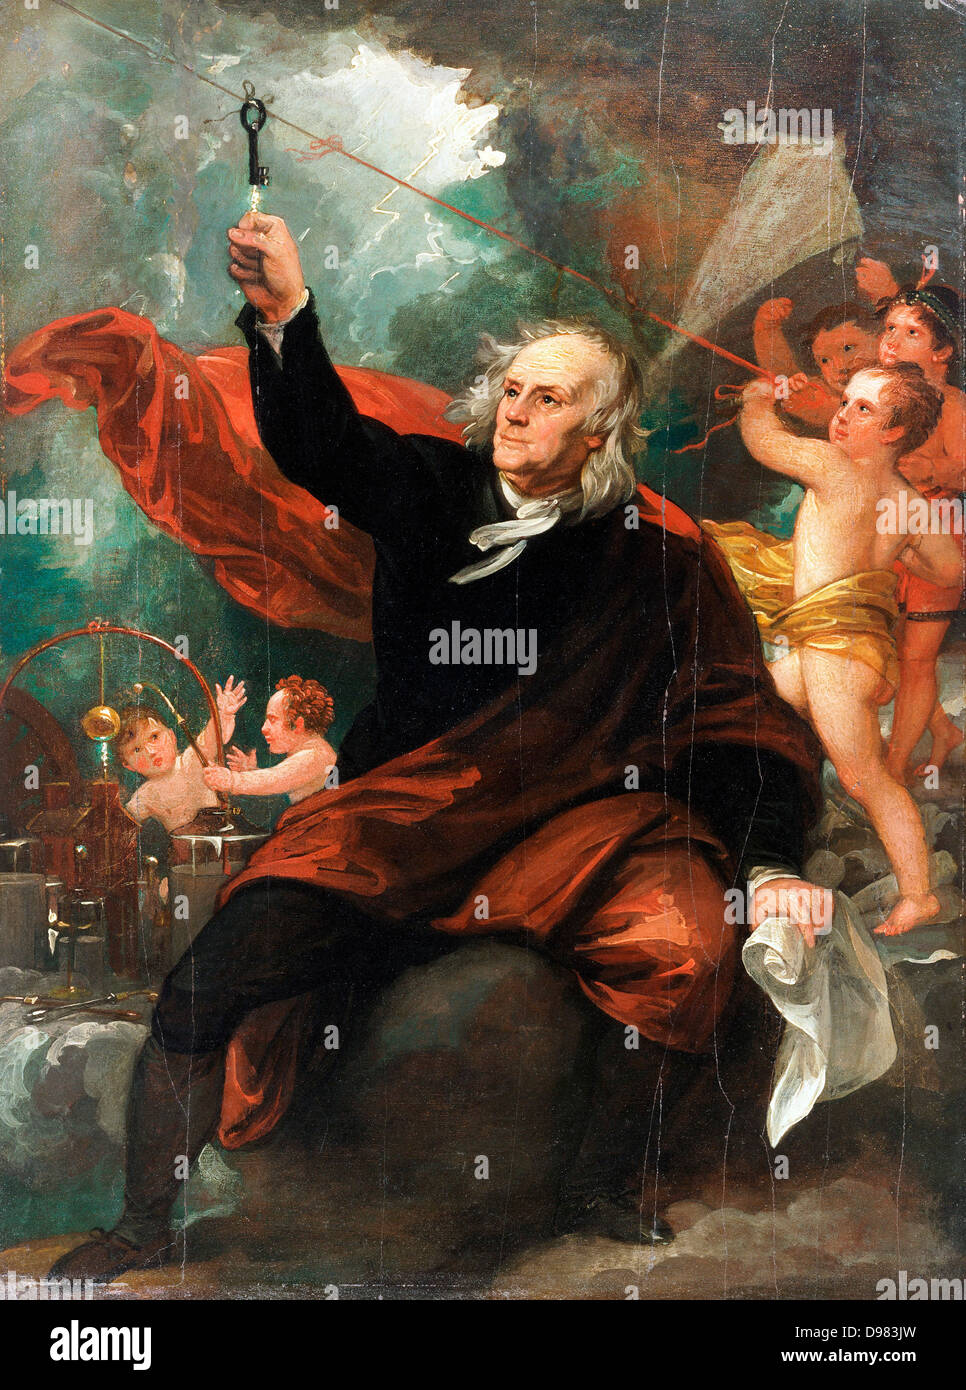 Benjamin West, Benjamin Franklin l'électricité Dessin du ciel. Circa 1816. Huile sur toile. Philadelphia Museum of Art, Philad Banque D'Images